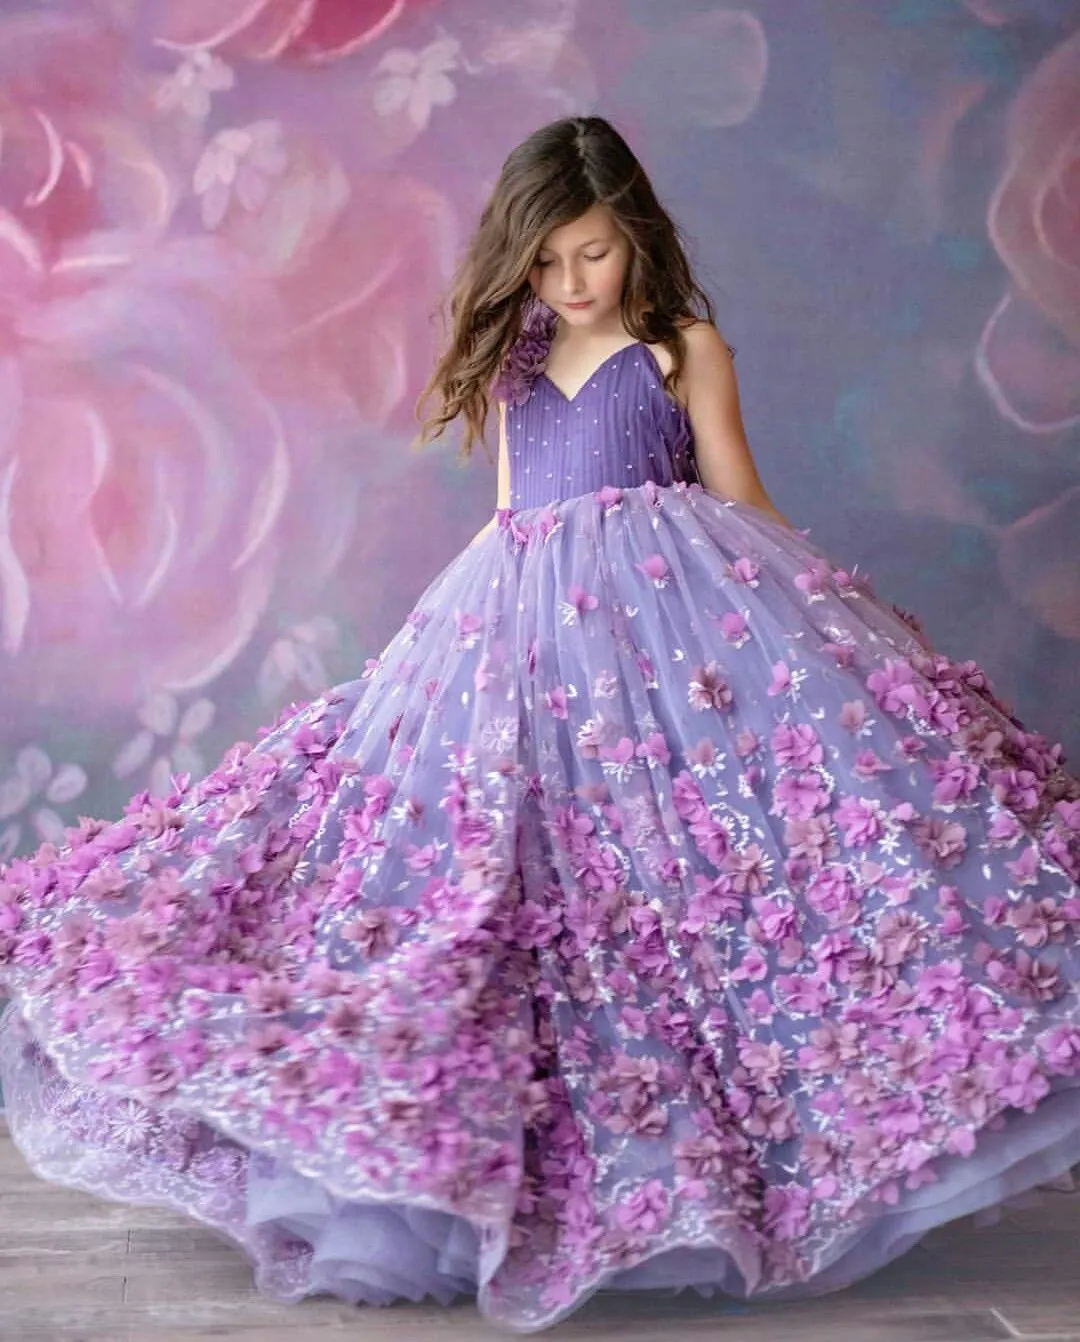 2024 Mor çiçek kız düğünler için elbiseler v boyun spagetti kayışları dantel aplikler boncuklar balo elbisesi tül kızlar yarışması elbise çocuklar cemaat elbiseleri el yapımı çiçekler